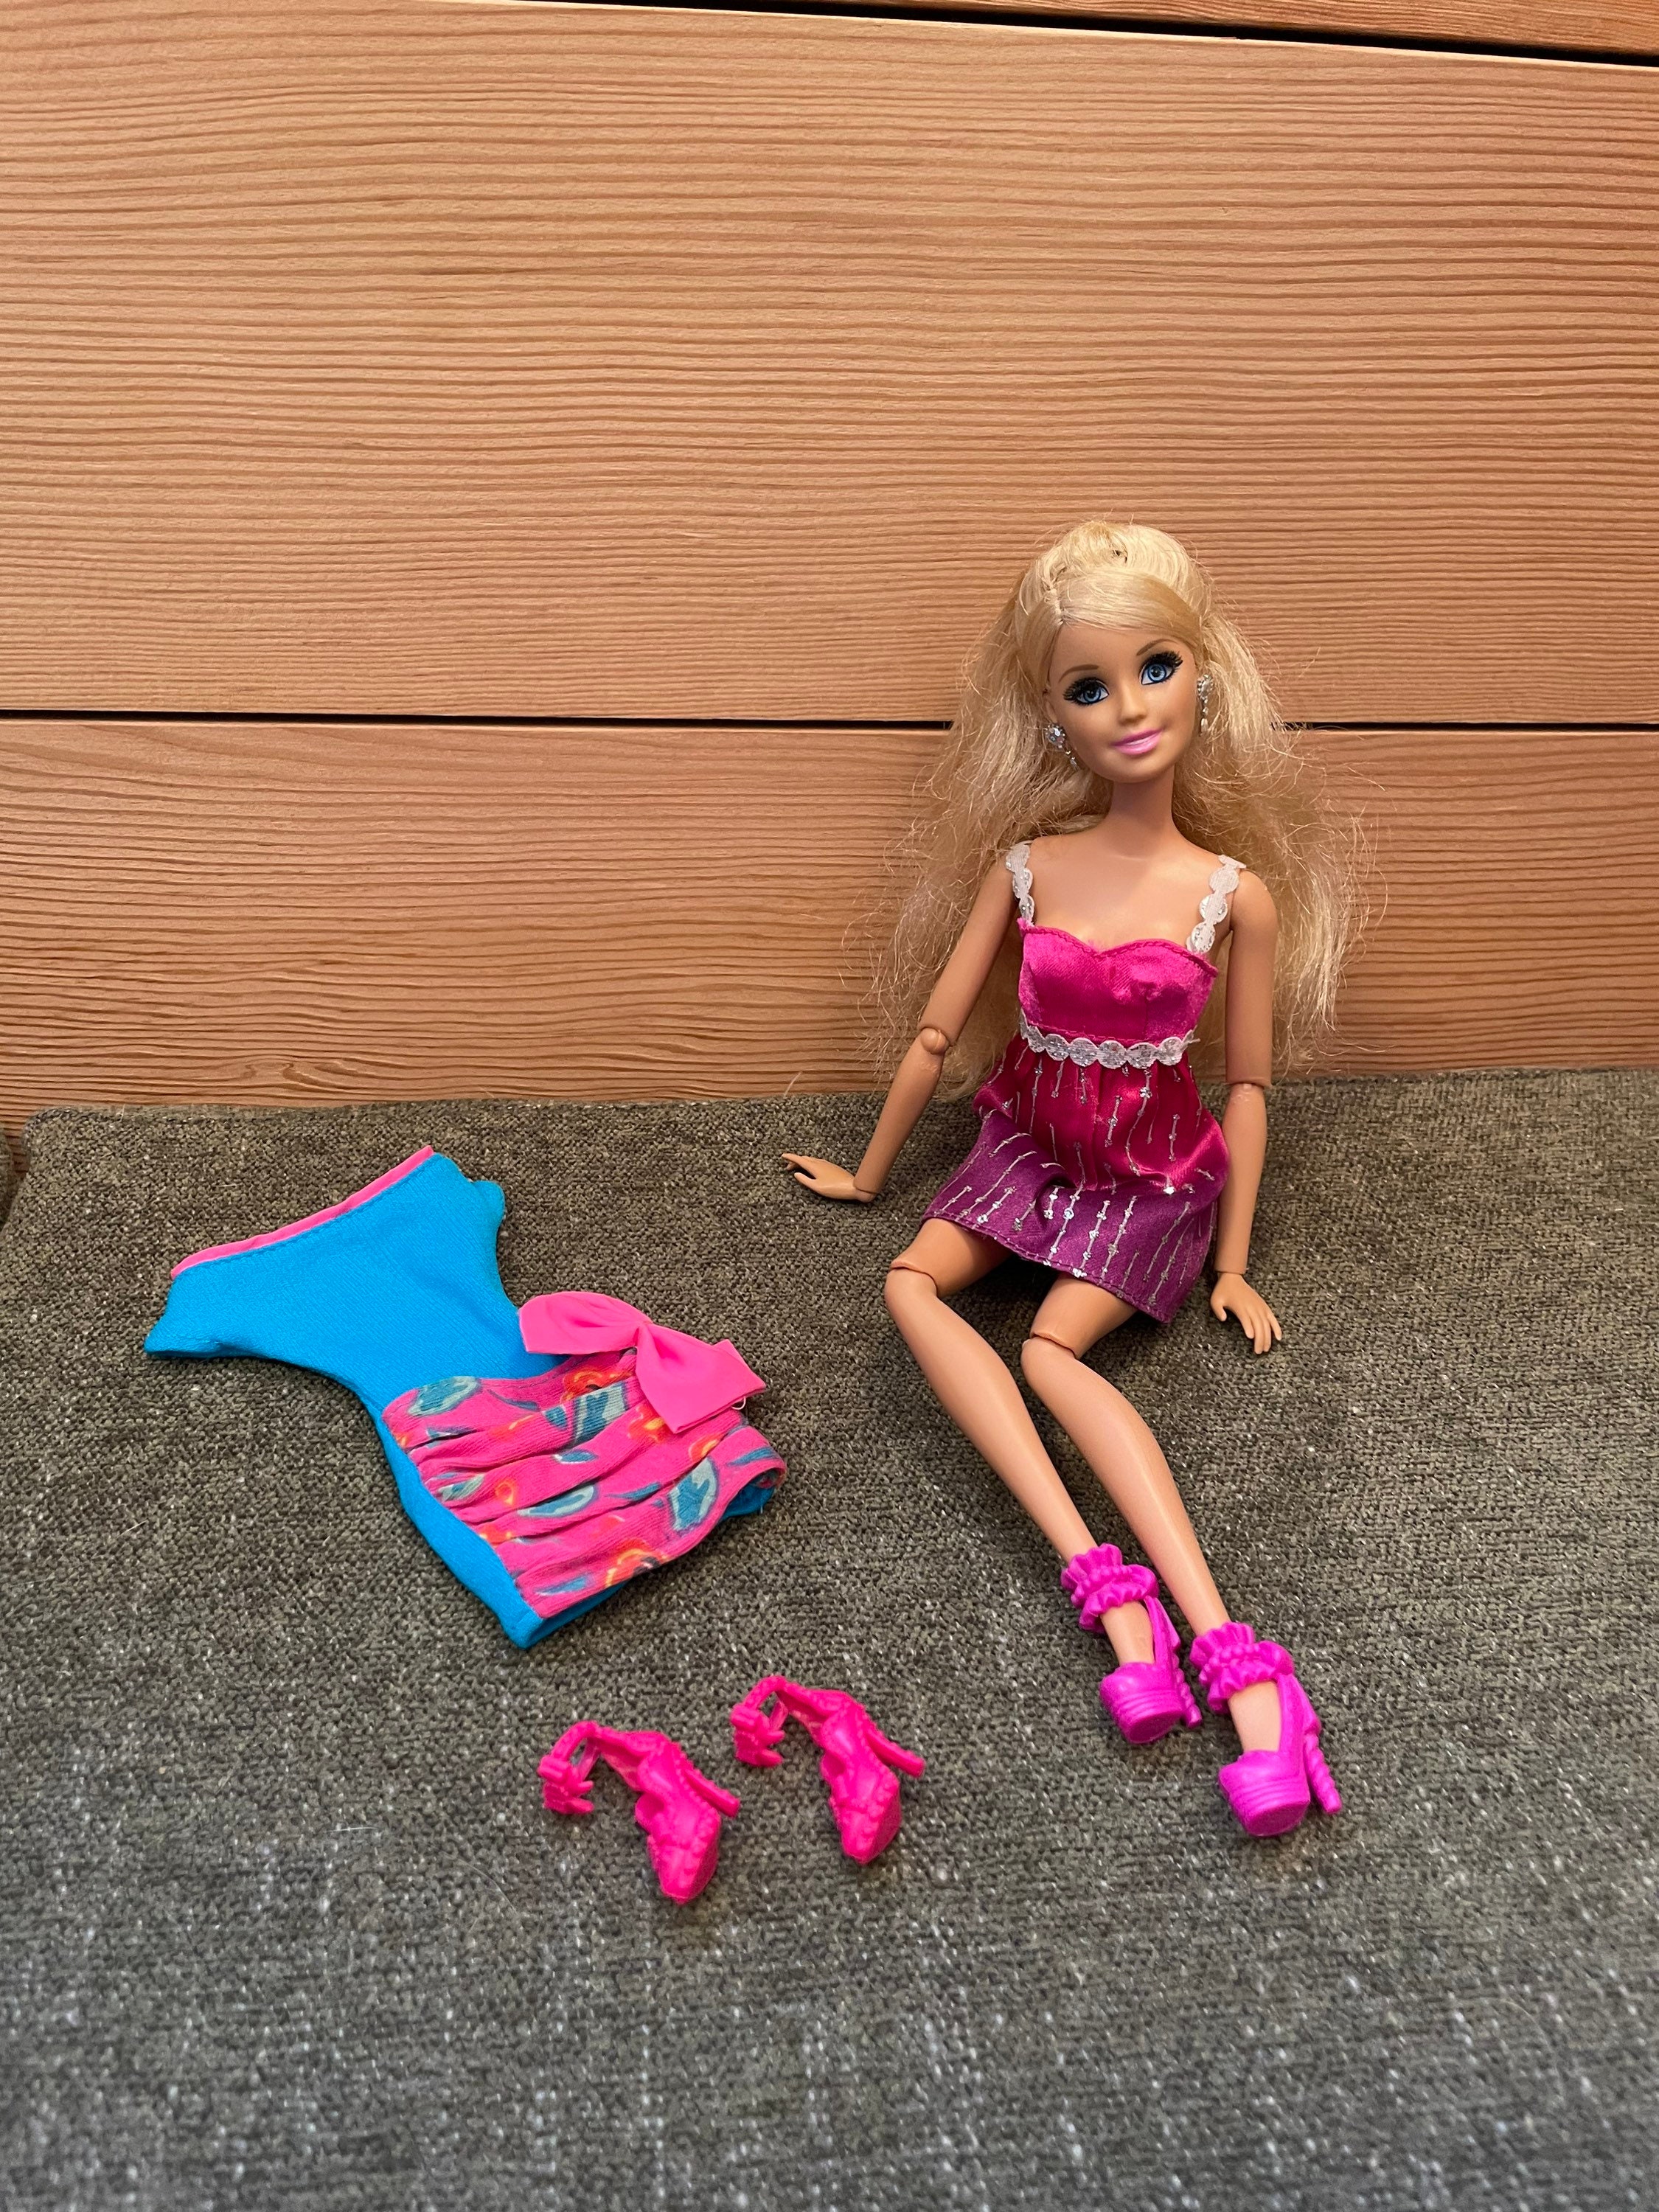 Casa Barbie Dreamhouse Pool Party Doll House - Mattel em Promoção na  Americanas